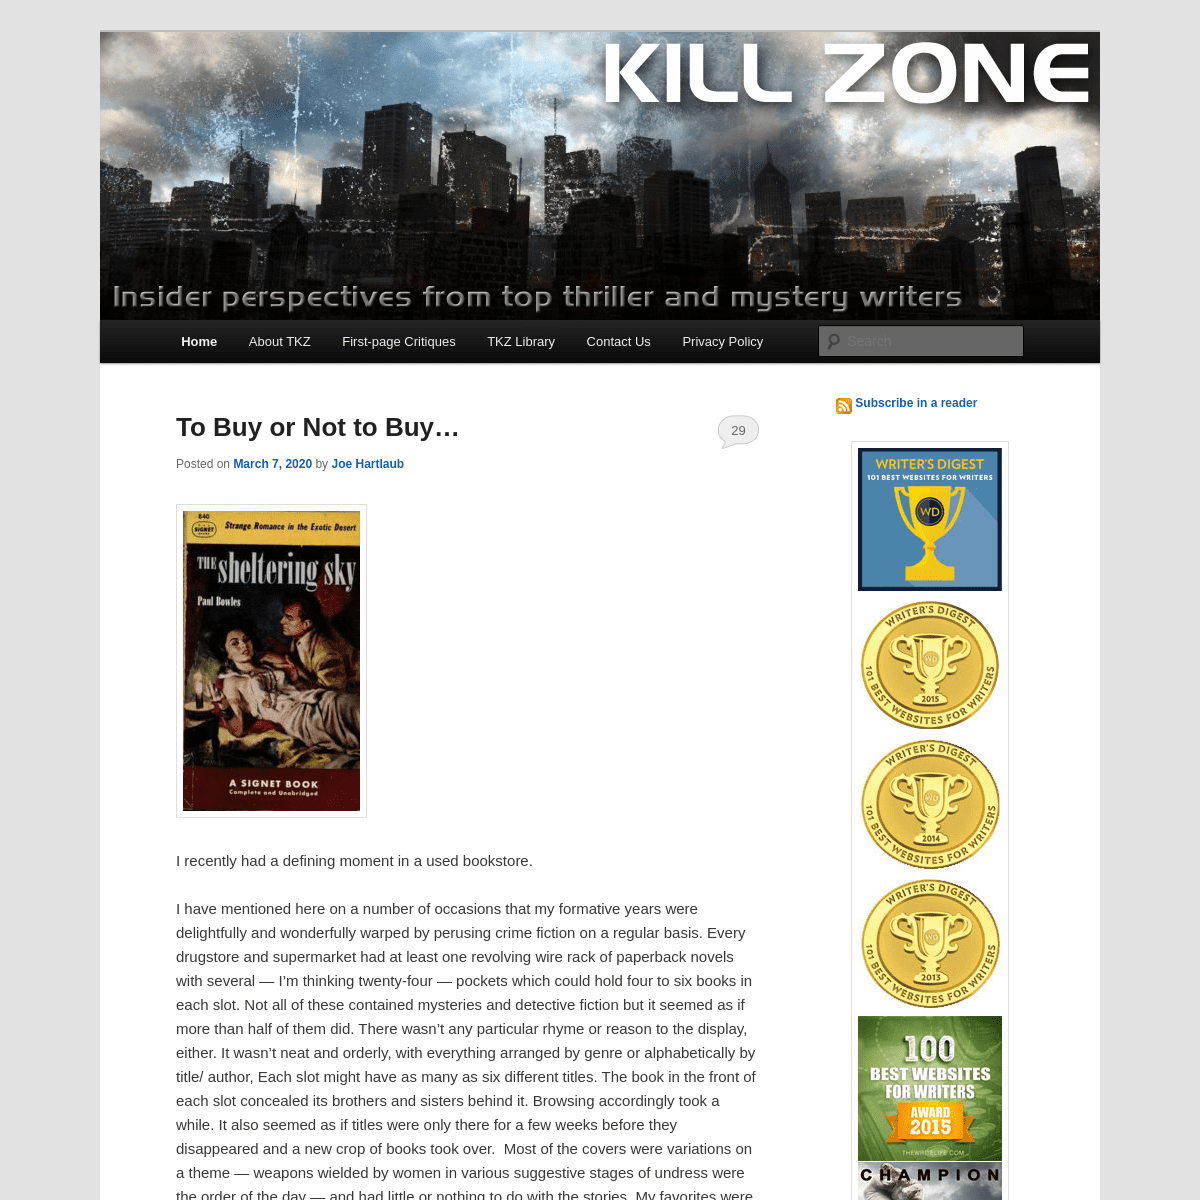 A complete backup of killzoneblog.com